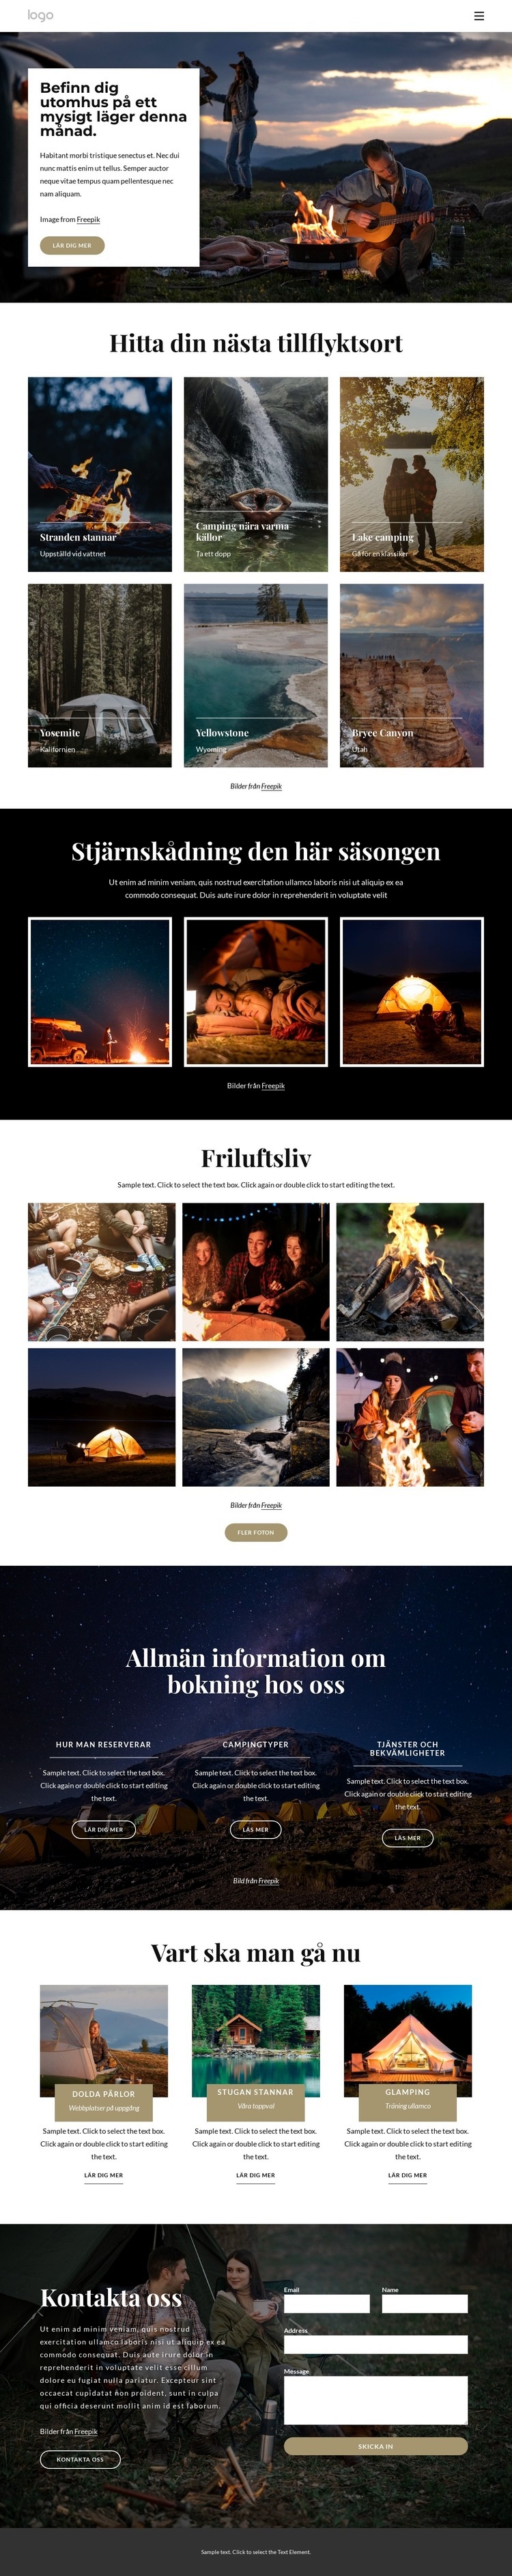 Ska på campingtur HTML-mall